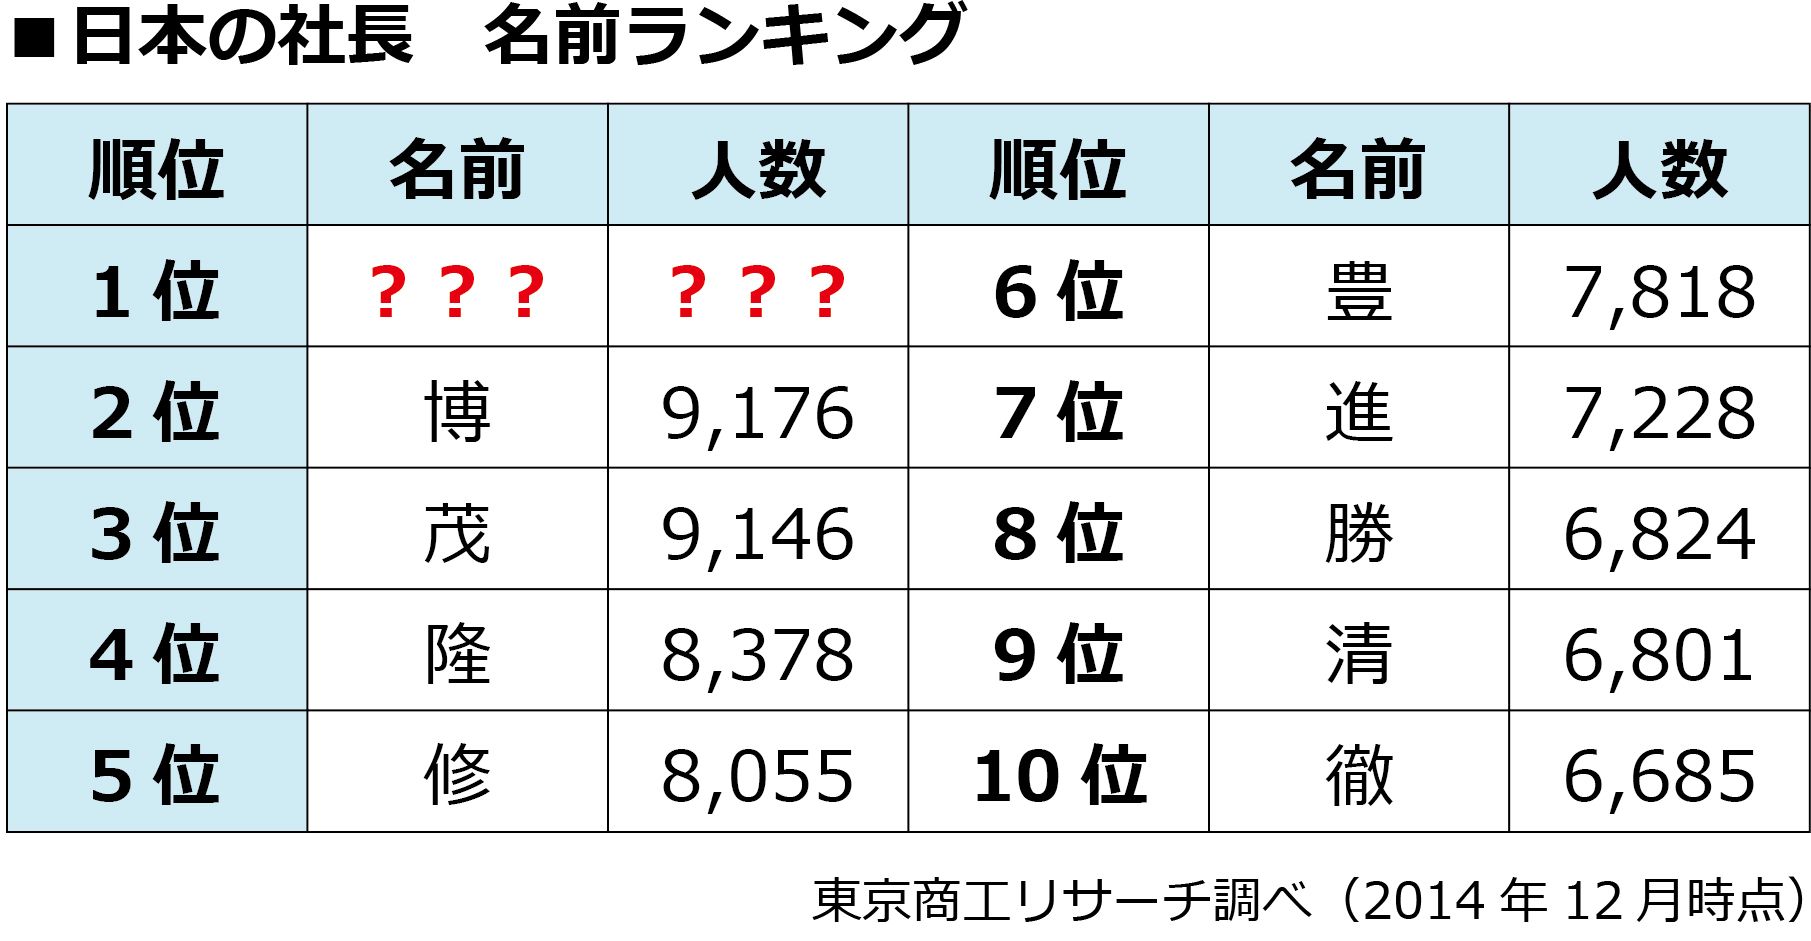 日本人が子どもに 翔 の名をつけたがる理由 テレビ 東洋経済オンライン 経済ニュースの新基準